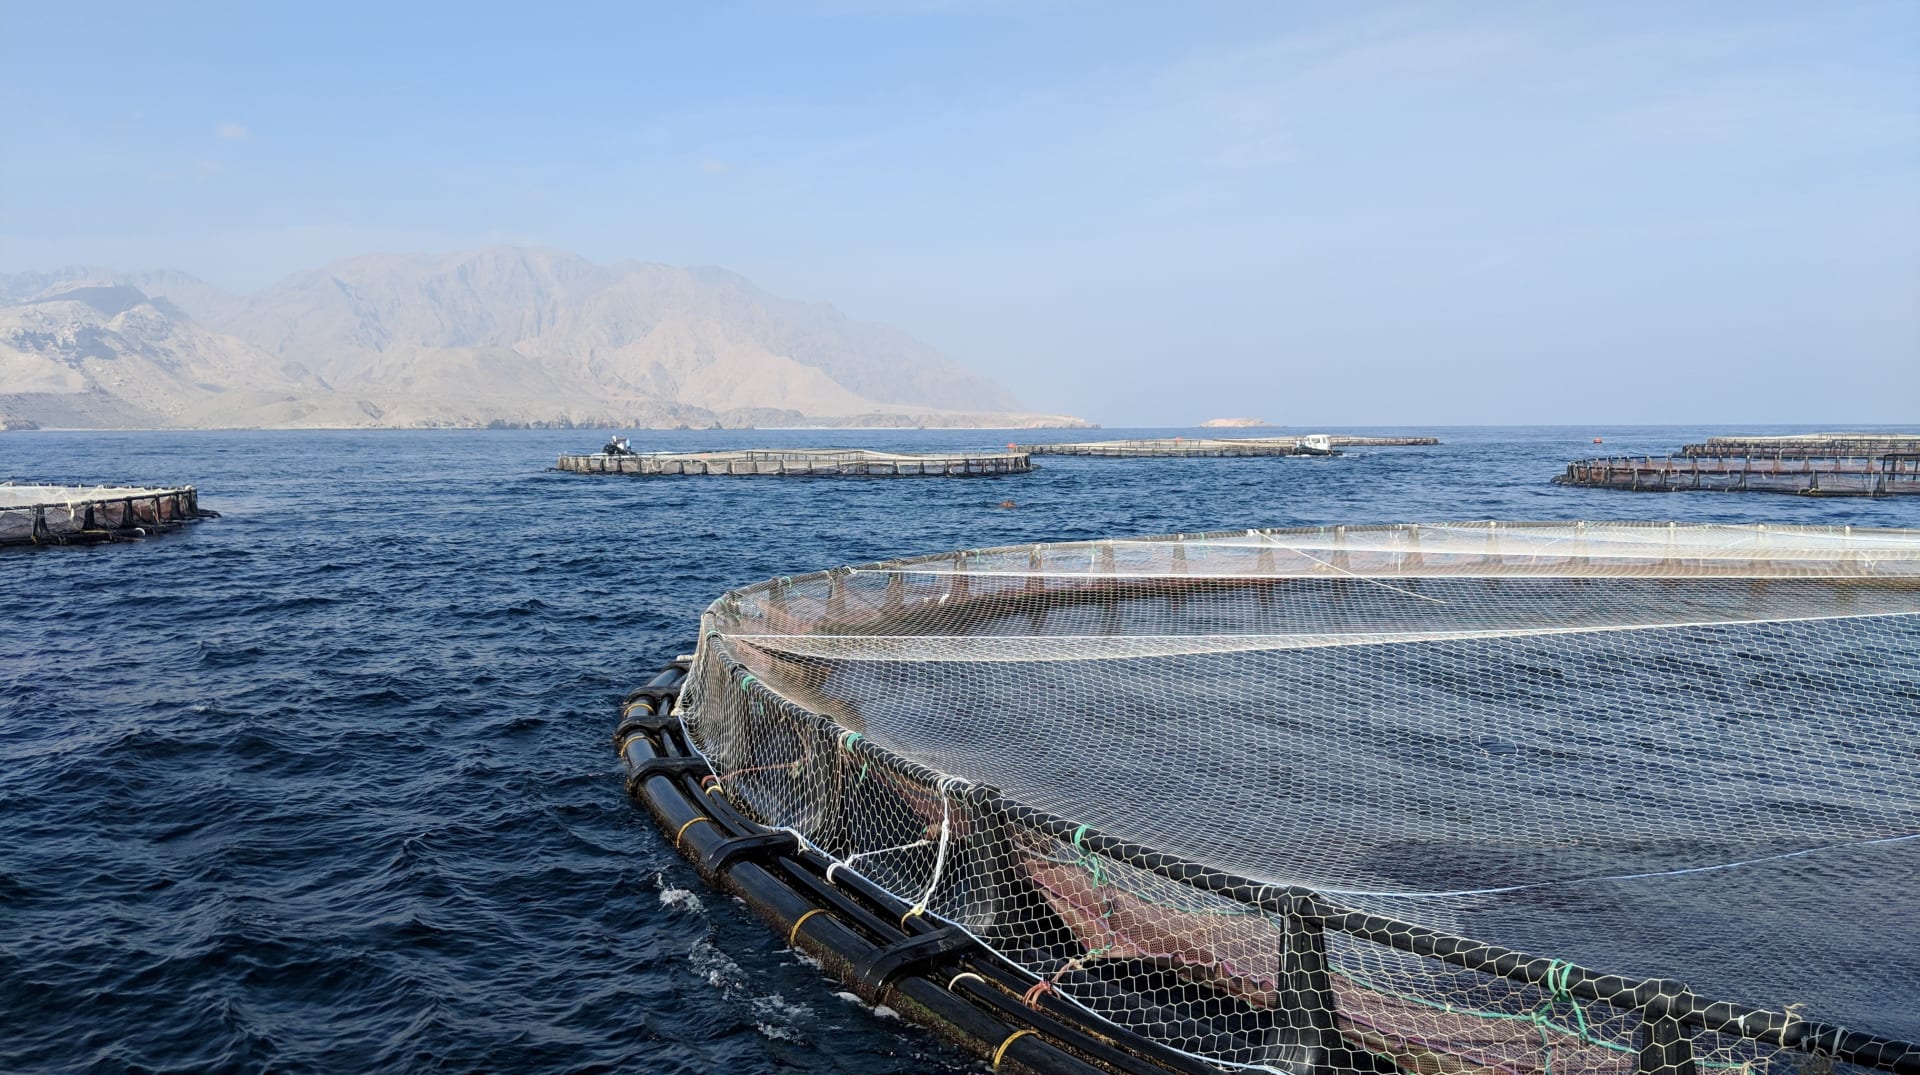 في مواجهة التغير المناخي والنمو السكاني ، هذه هي الطريقة التي تعزز بها التكنولوجيا قطاع تربية الأحياء المائية وصيد الأسماك في دول الخليج